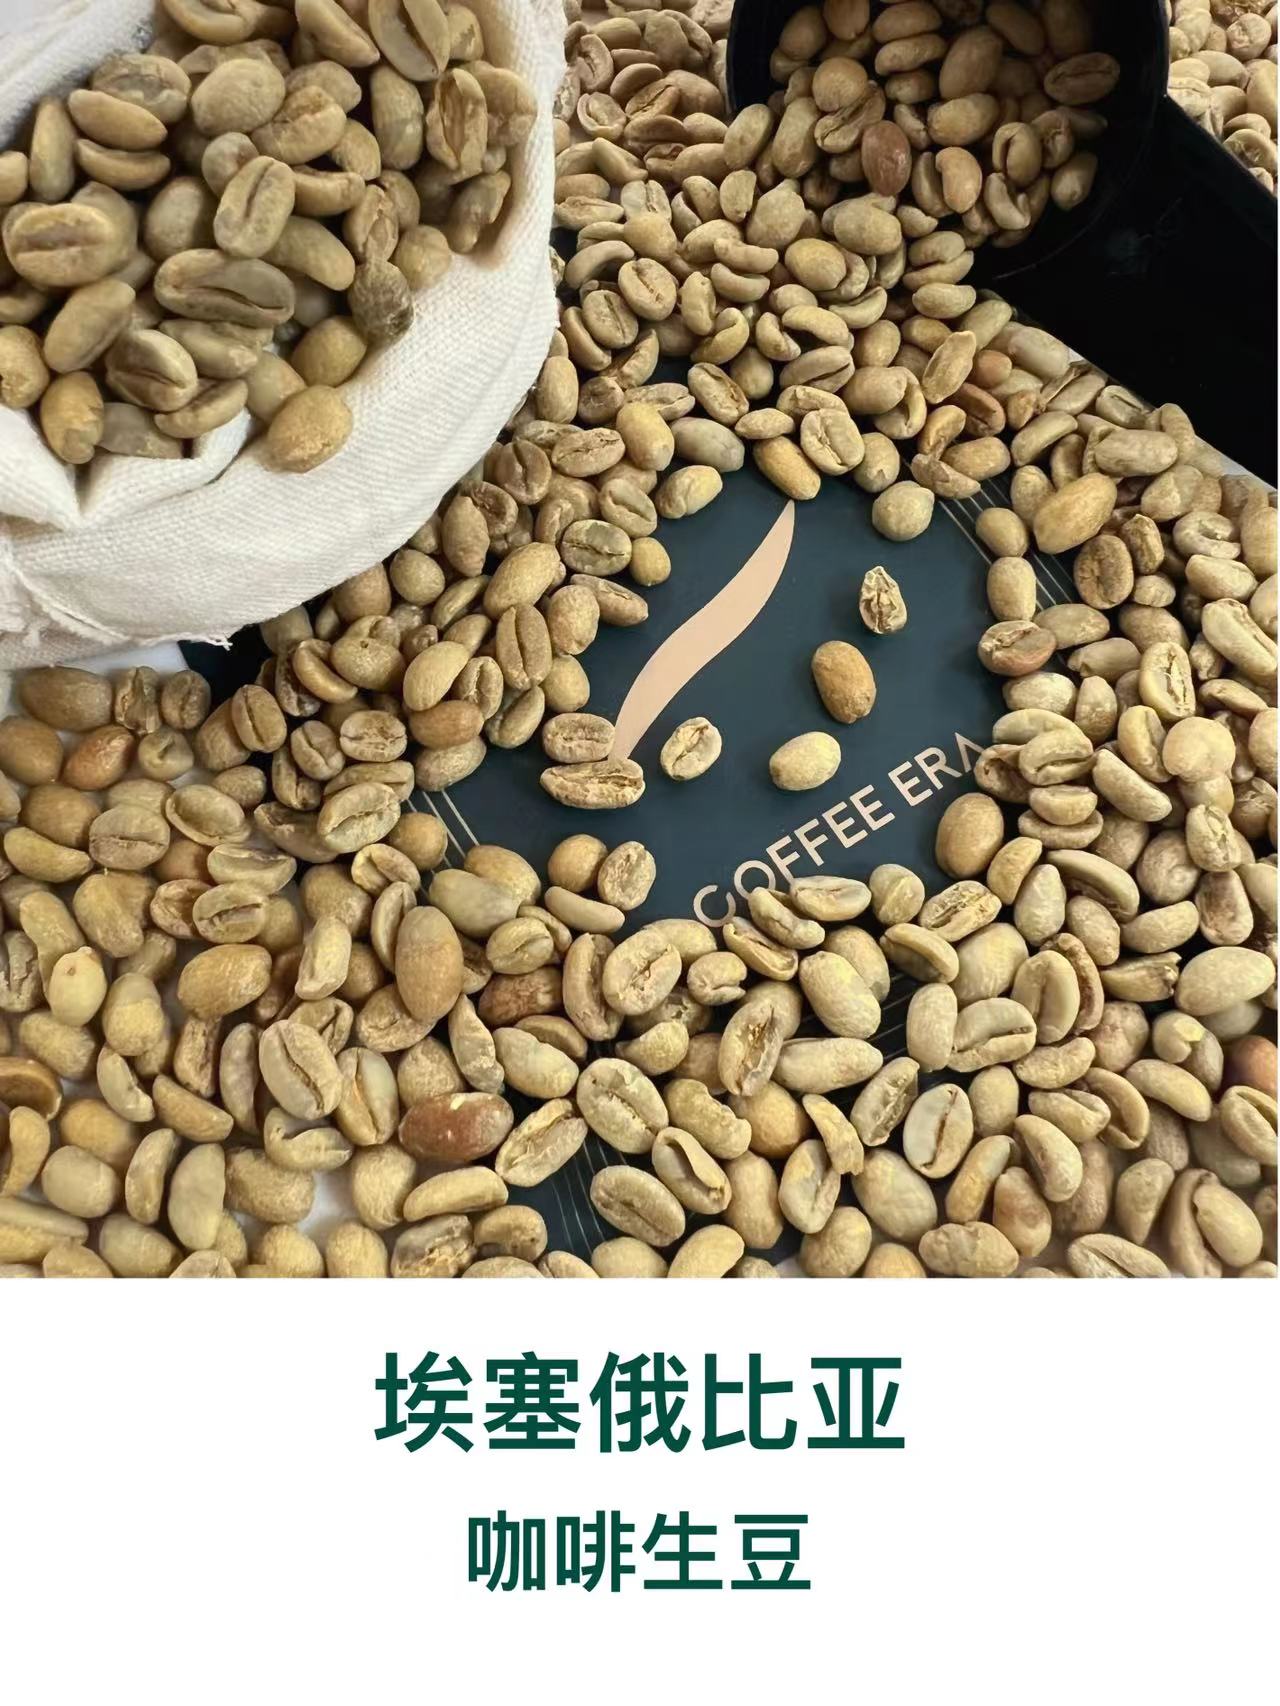 埃塞俄比亚咖啡生豆